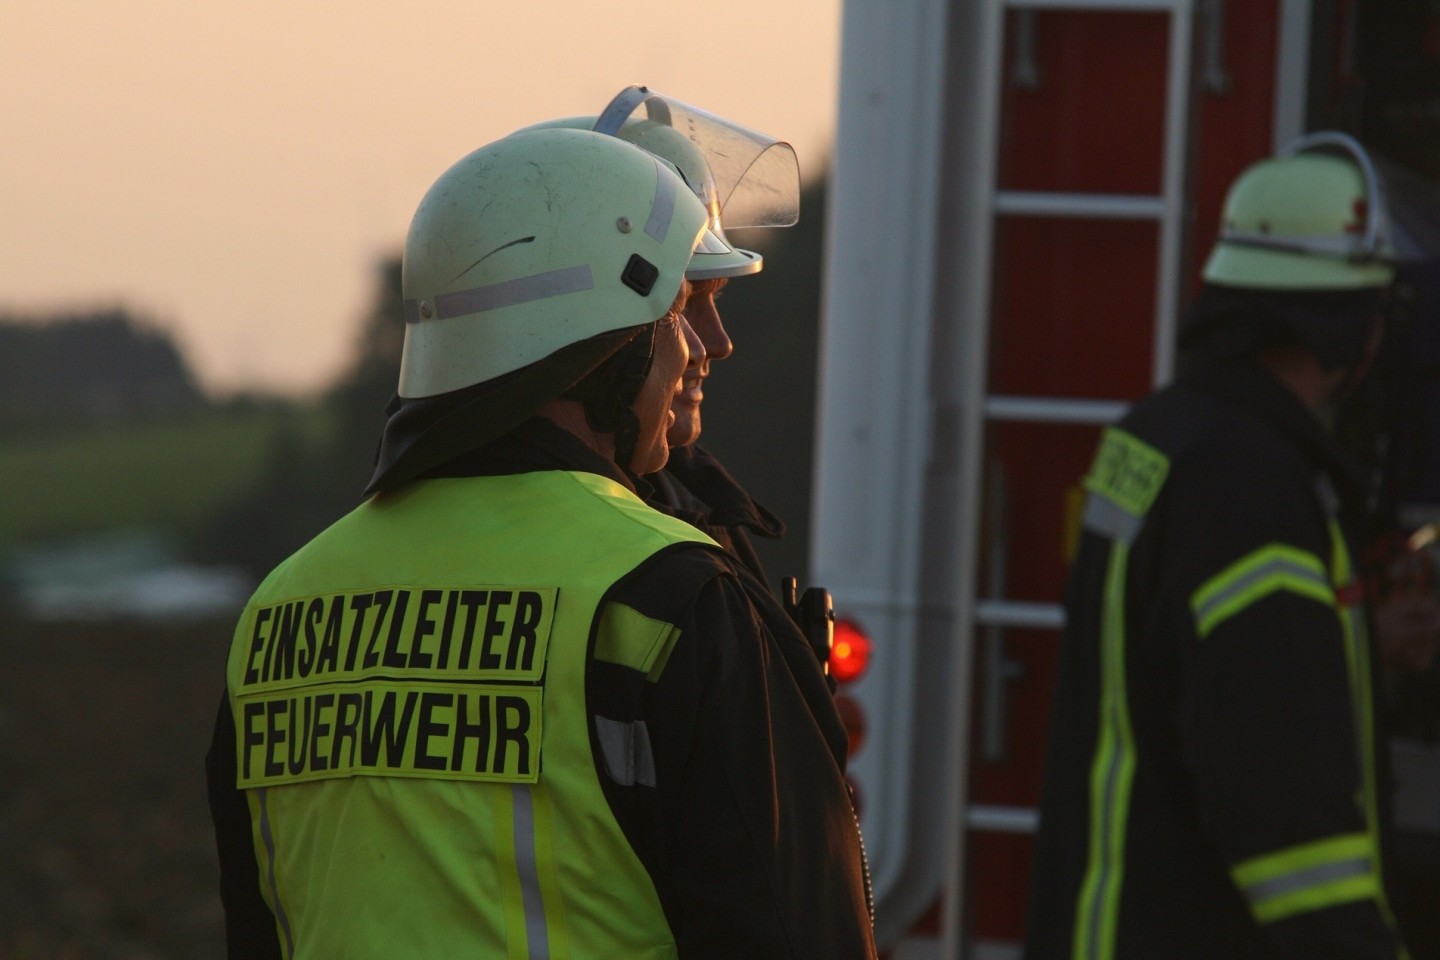 Die Feuerwehr möchte auf die Pflege und Wartung der Rauchmelder aufmerksam machen. / ©Pixabay.com